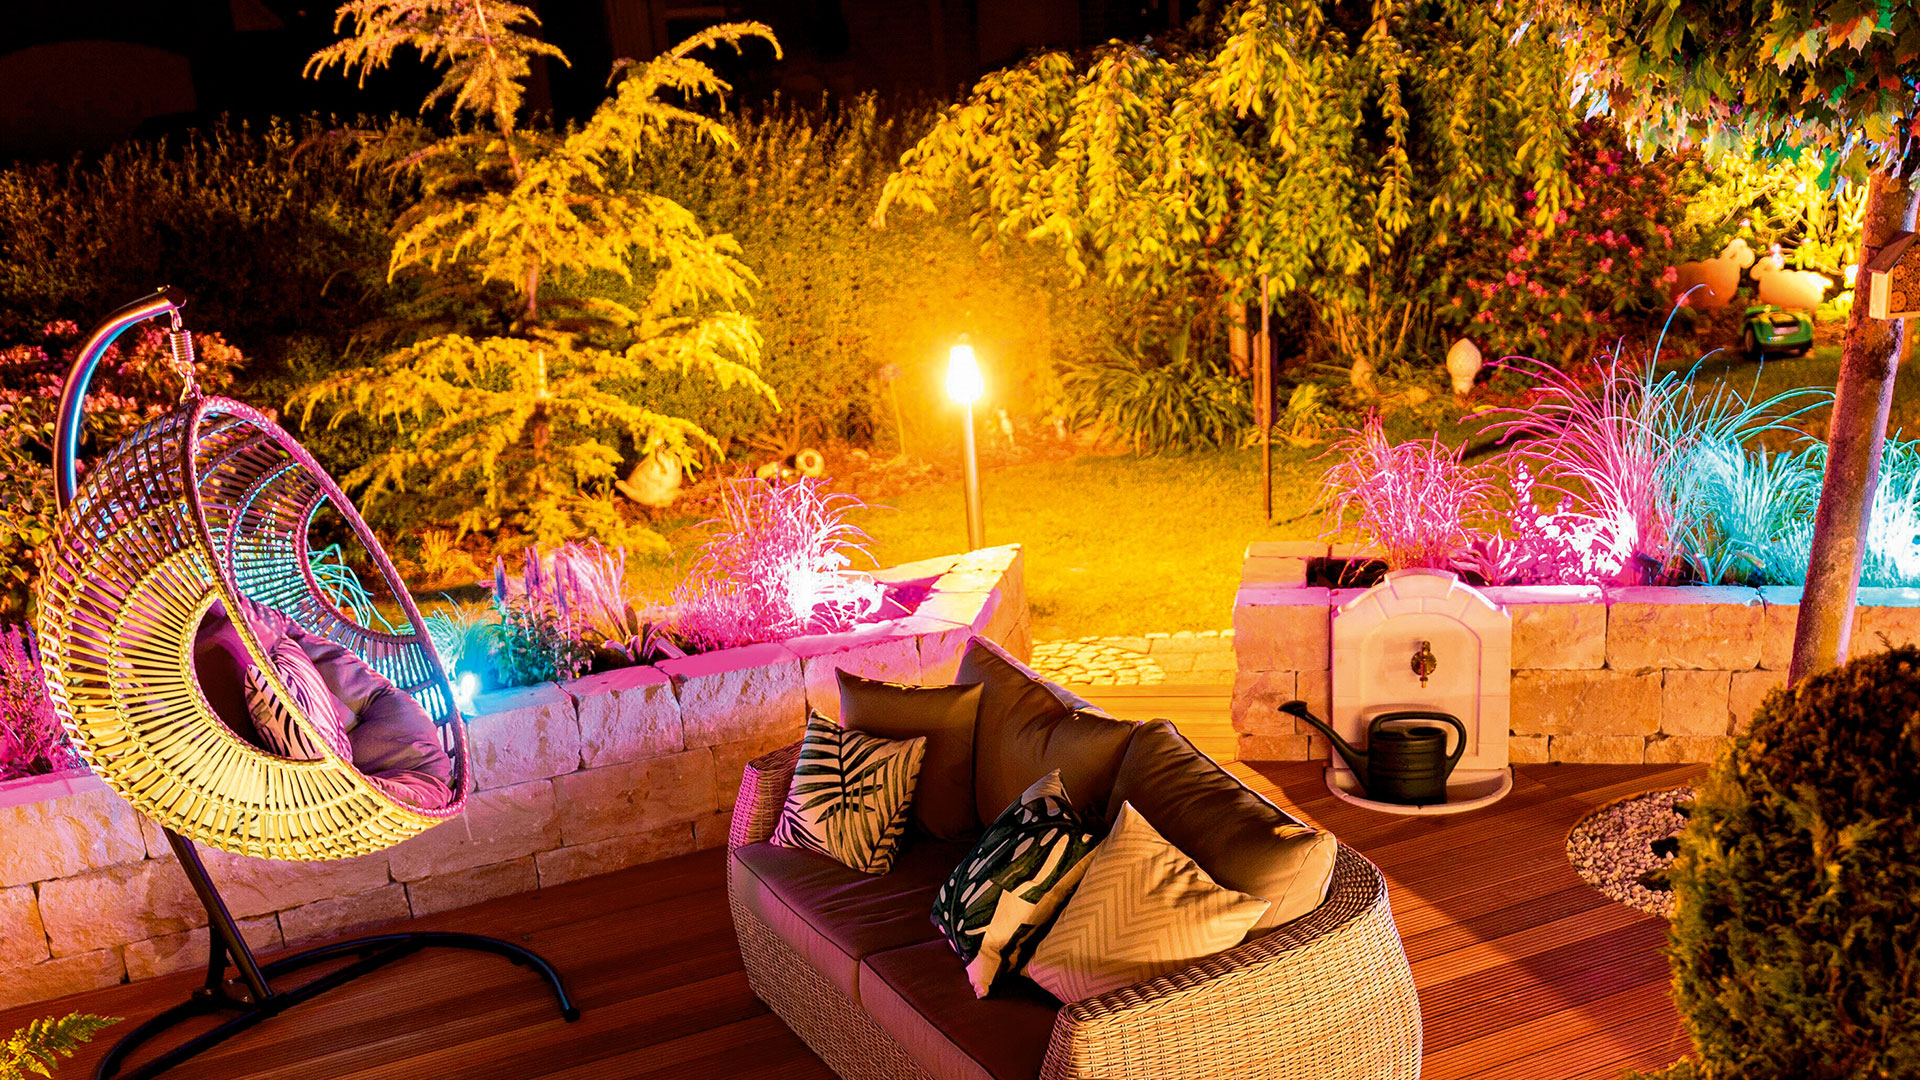 Lichtquellen im Garten, Bild: mauritius images